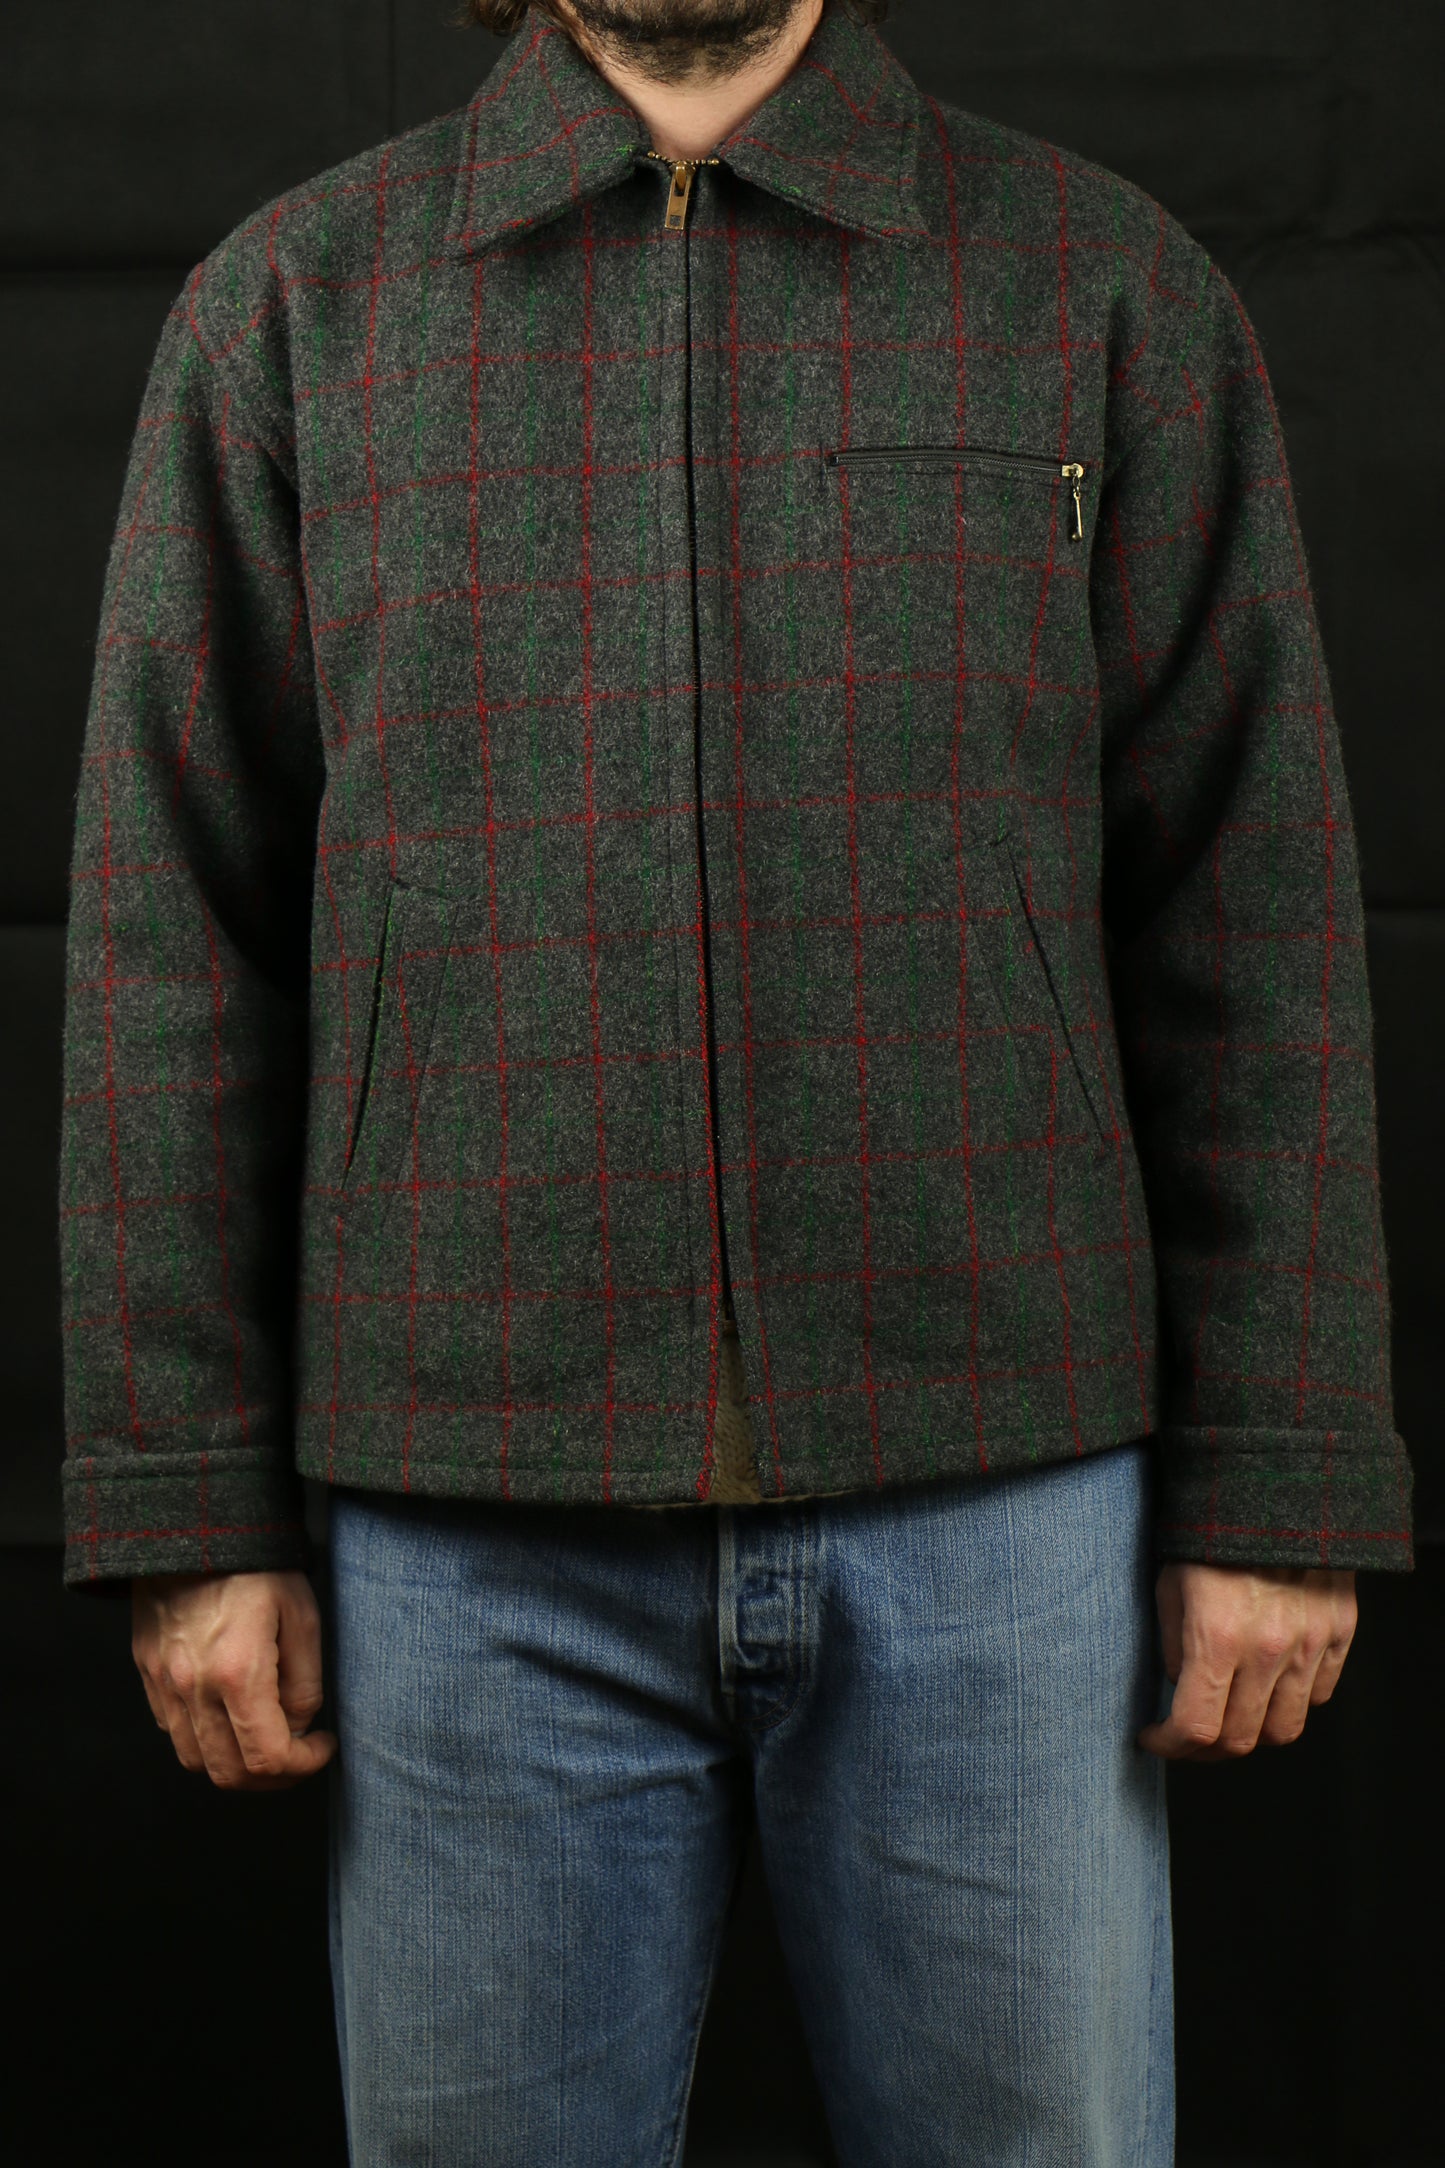 Johnson Wool Hunting Jacket 60s Talon Zip, clochard92.com